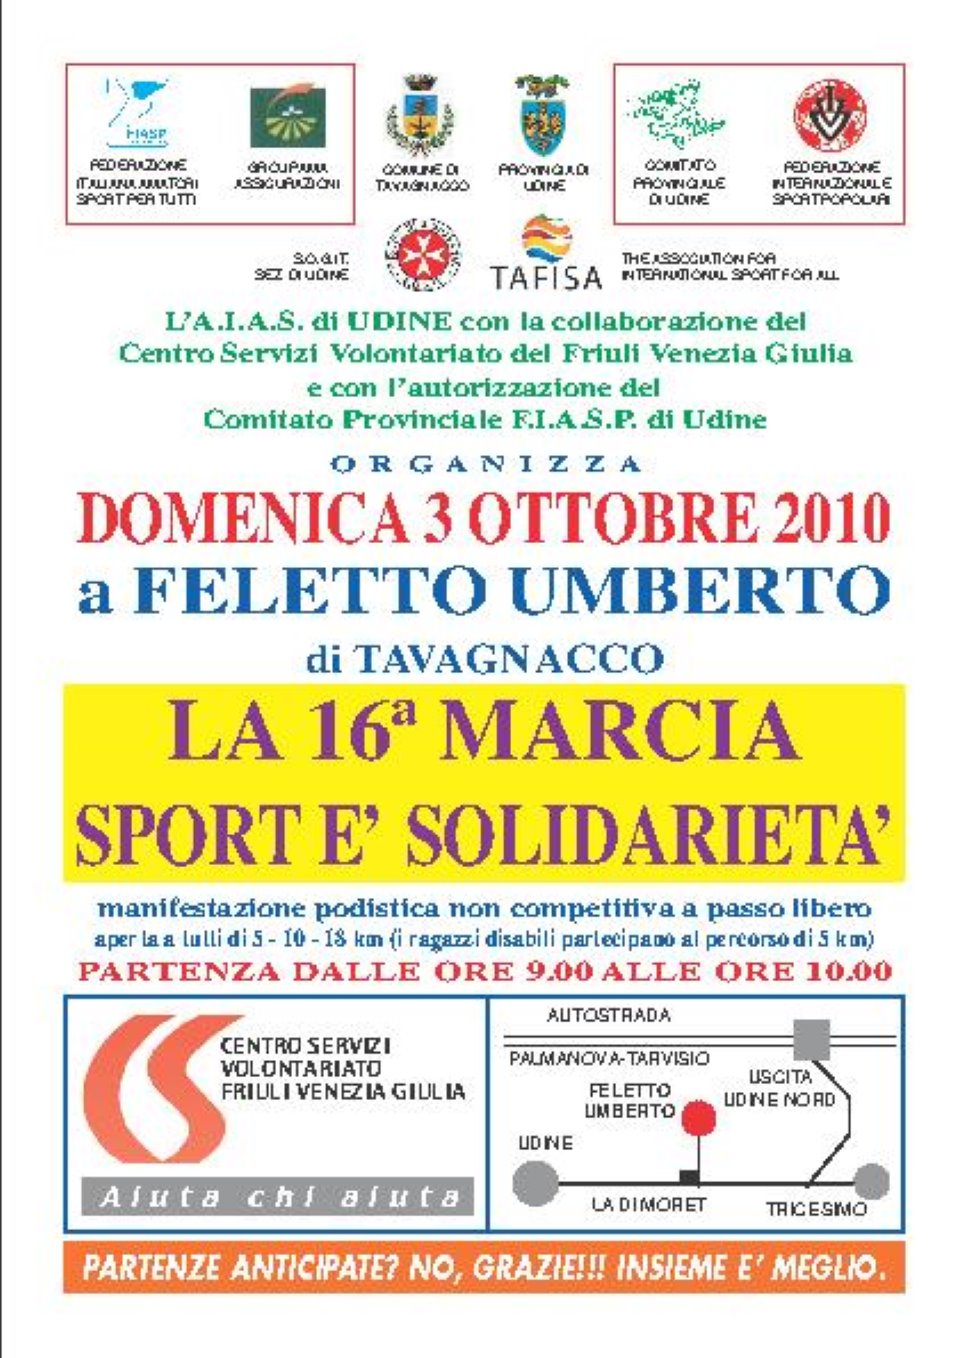 16° Marcia "Sport è Solidarietà" - Feletto Umberto di TAVAGNACCO (UD)